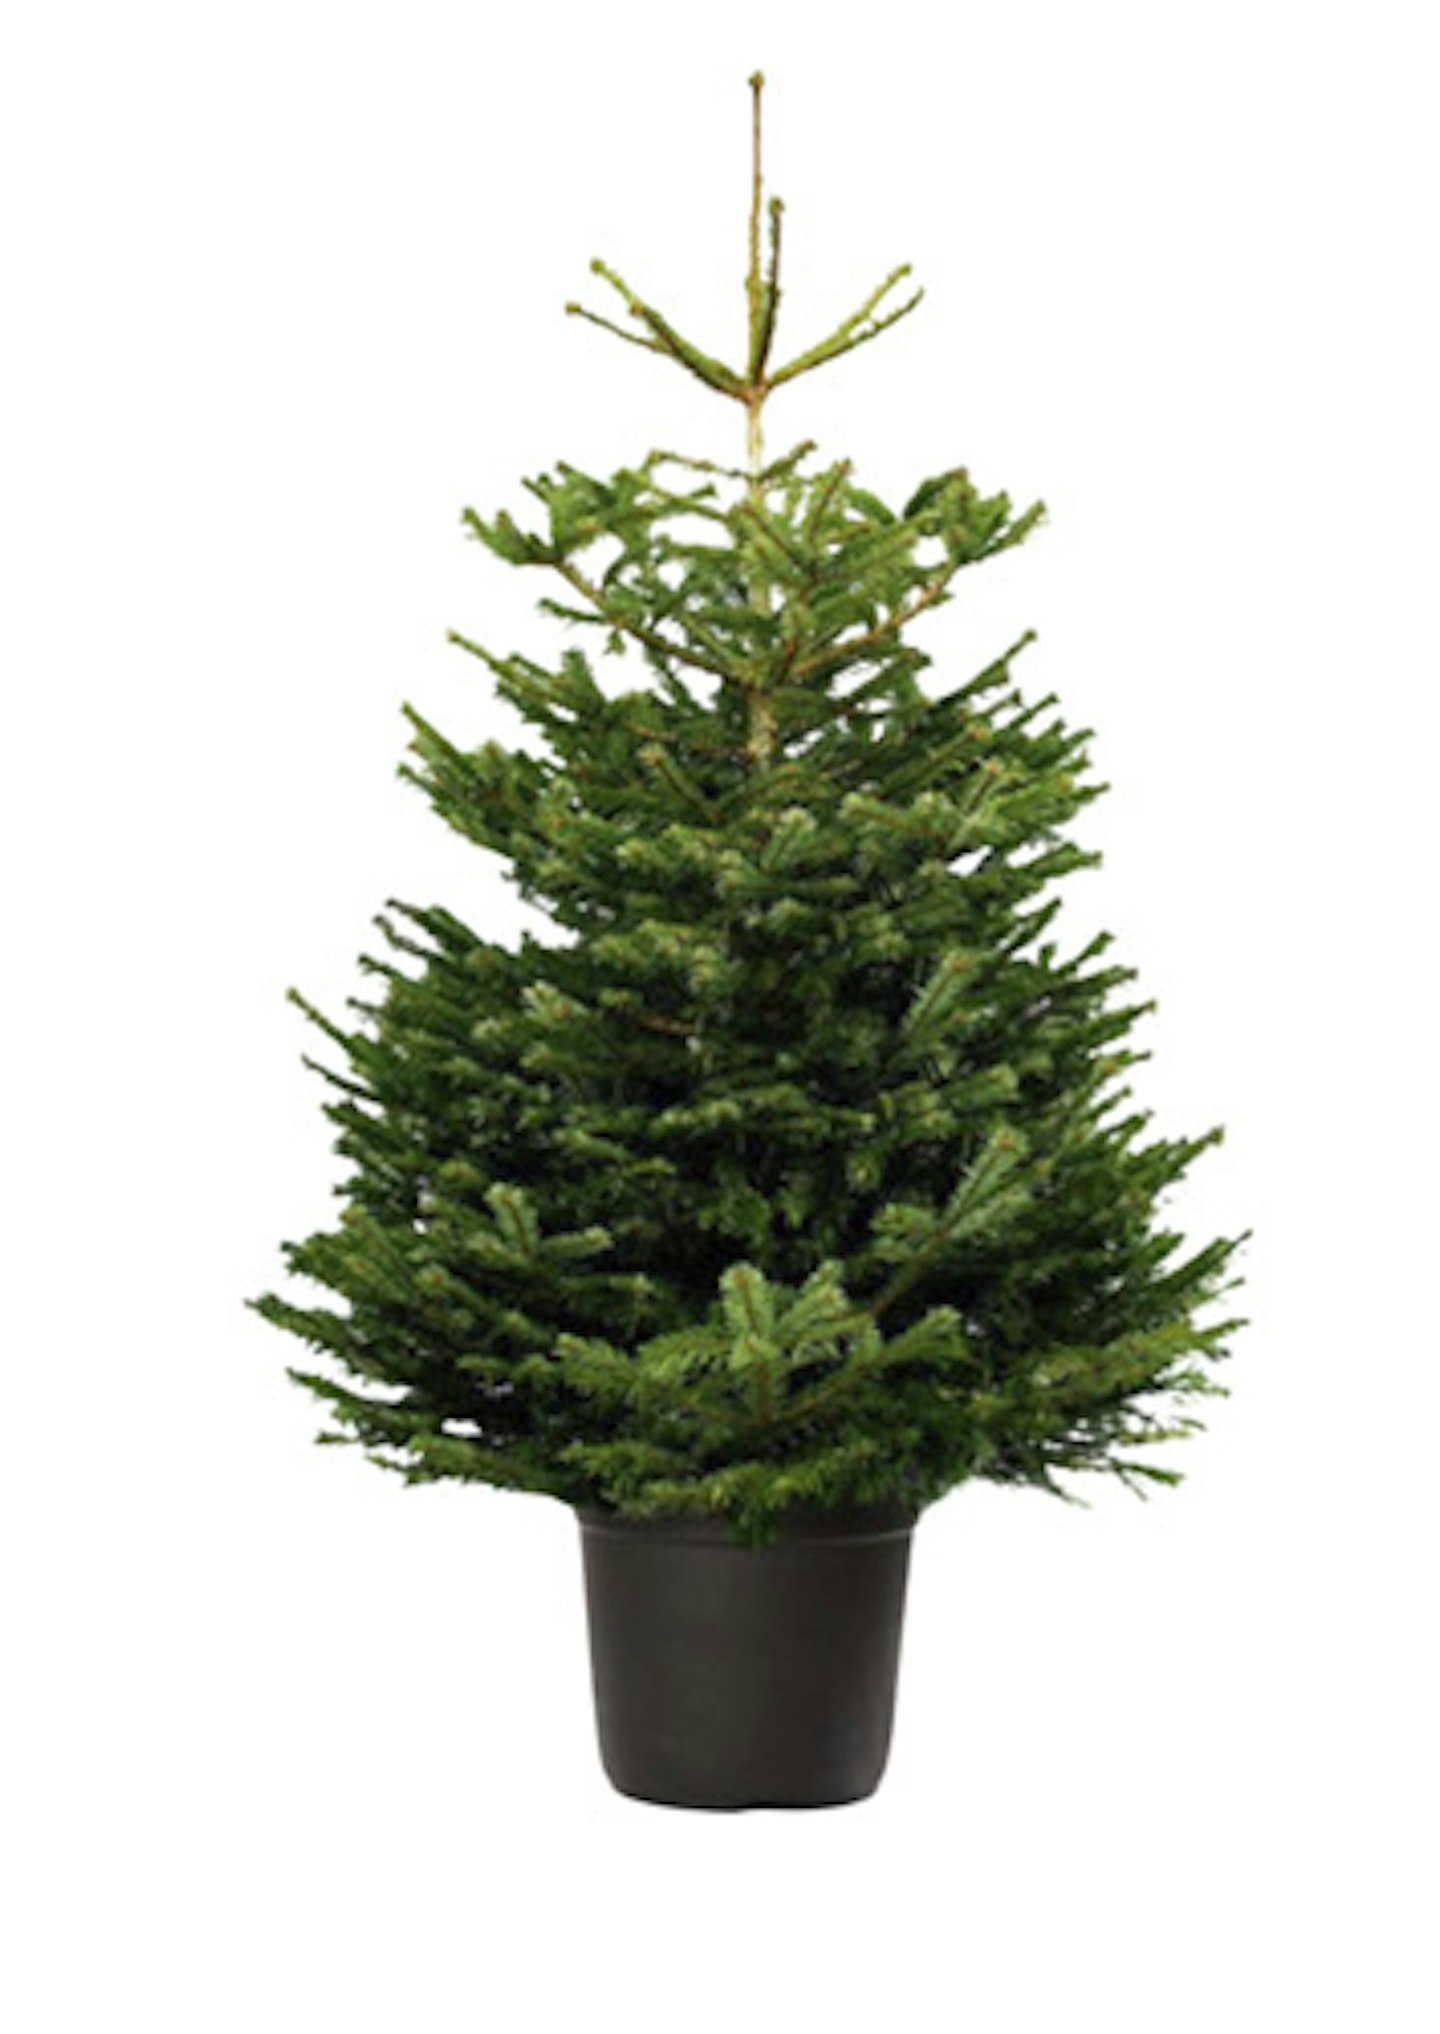 pot-grown christmas tree